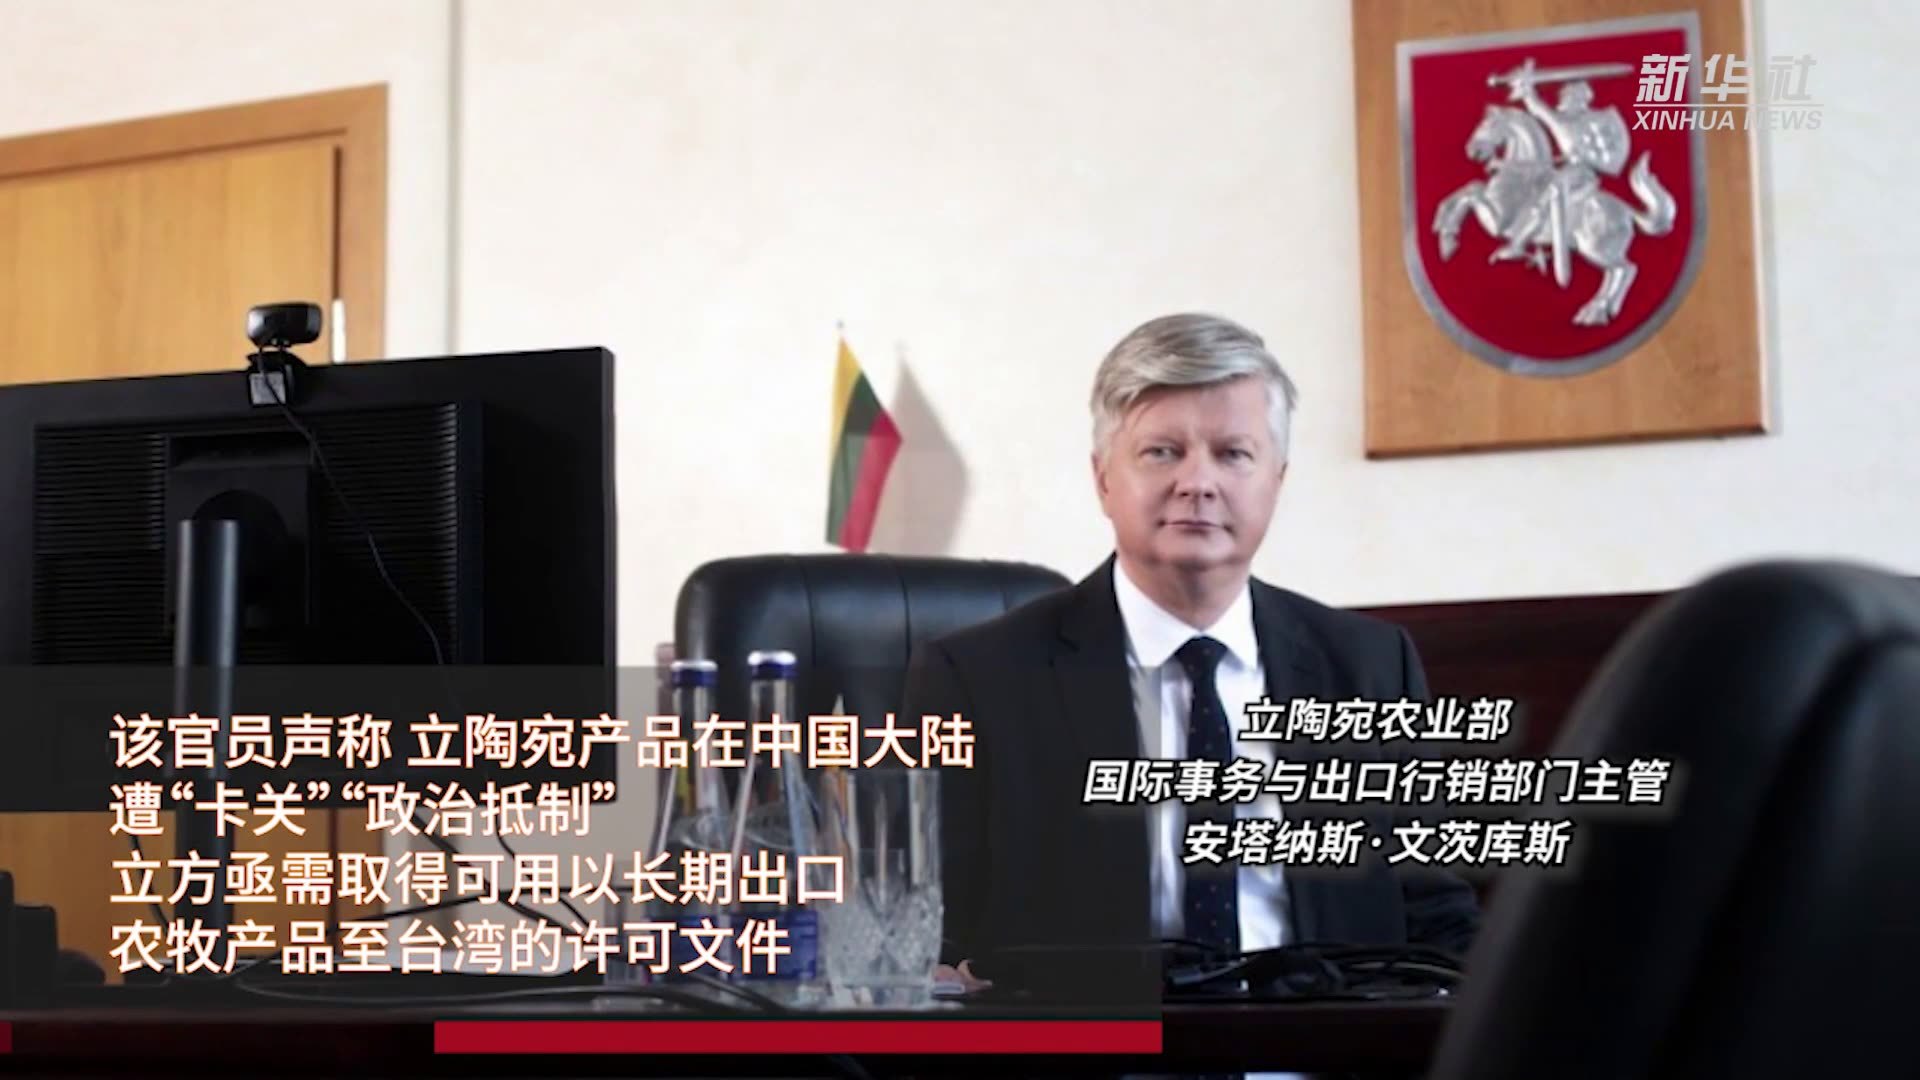 立陶宛贸易办事处低调揭牌 中英文名称皆不见台湾 – 博讯新闻网